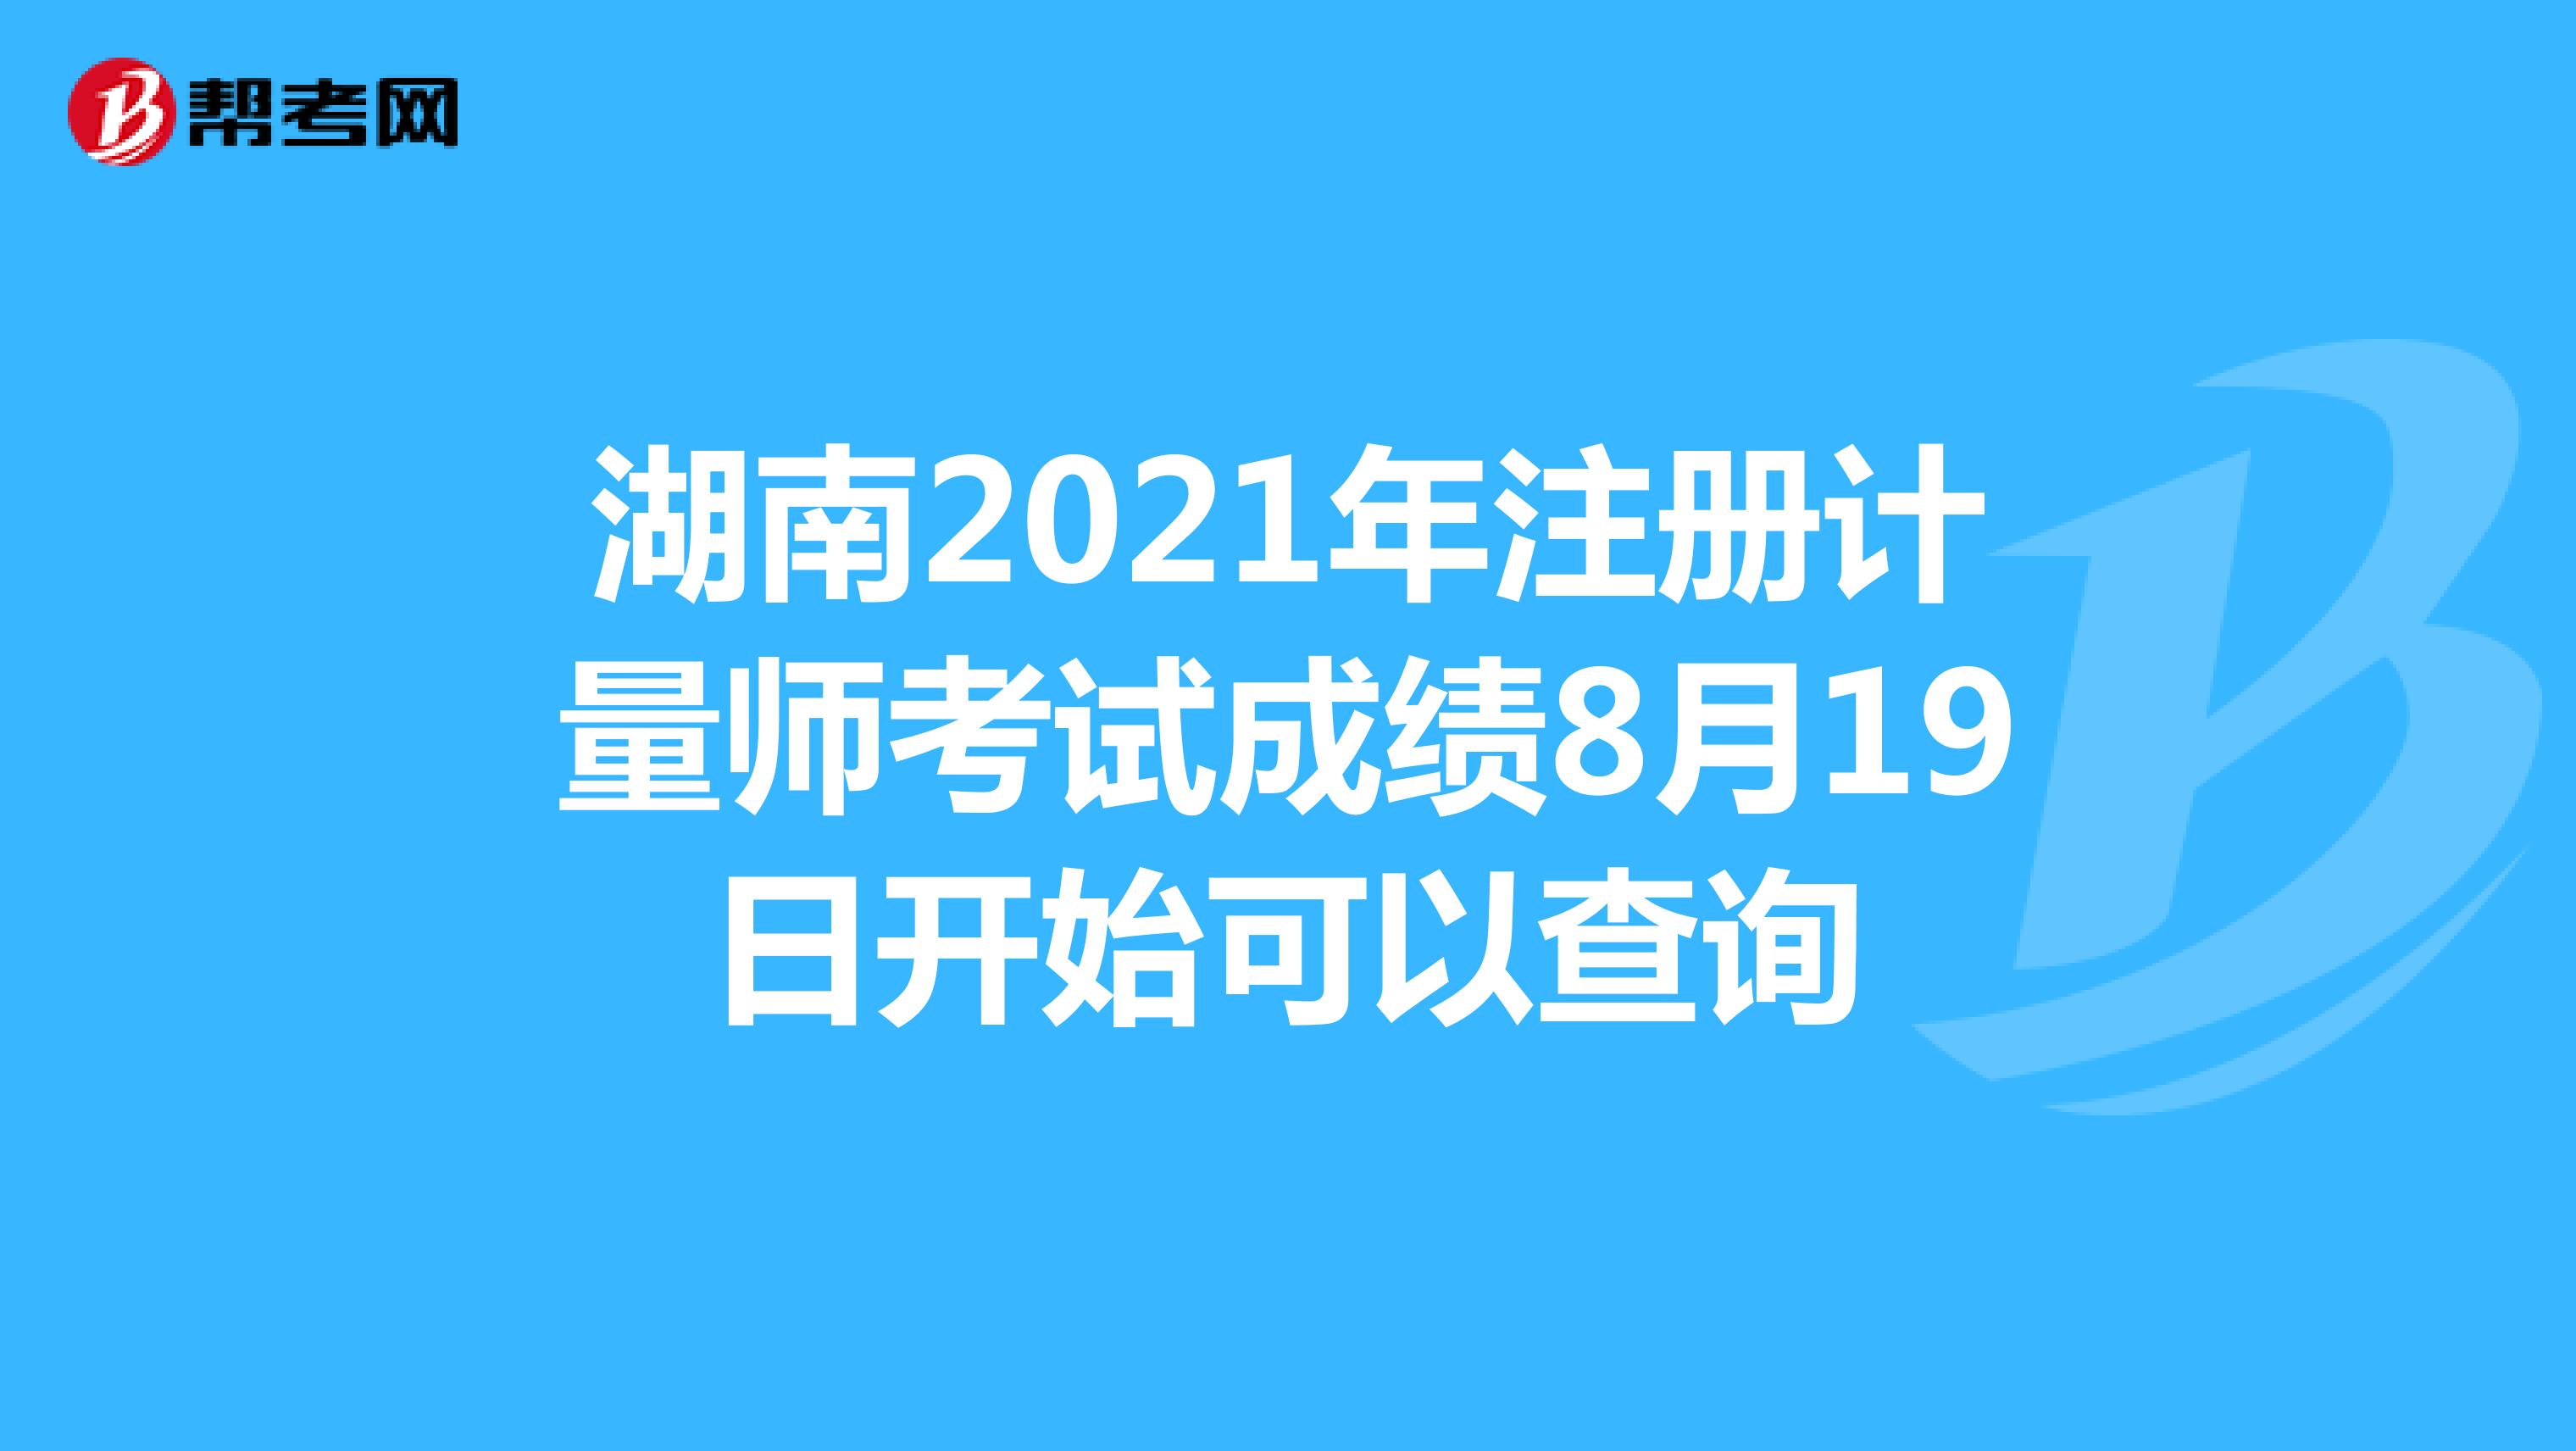 湖南2021年注册计量师考试成绩8月19日开始可以查询